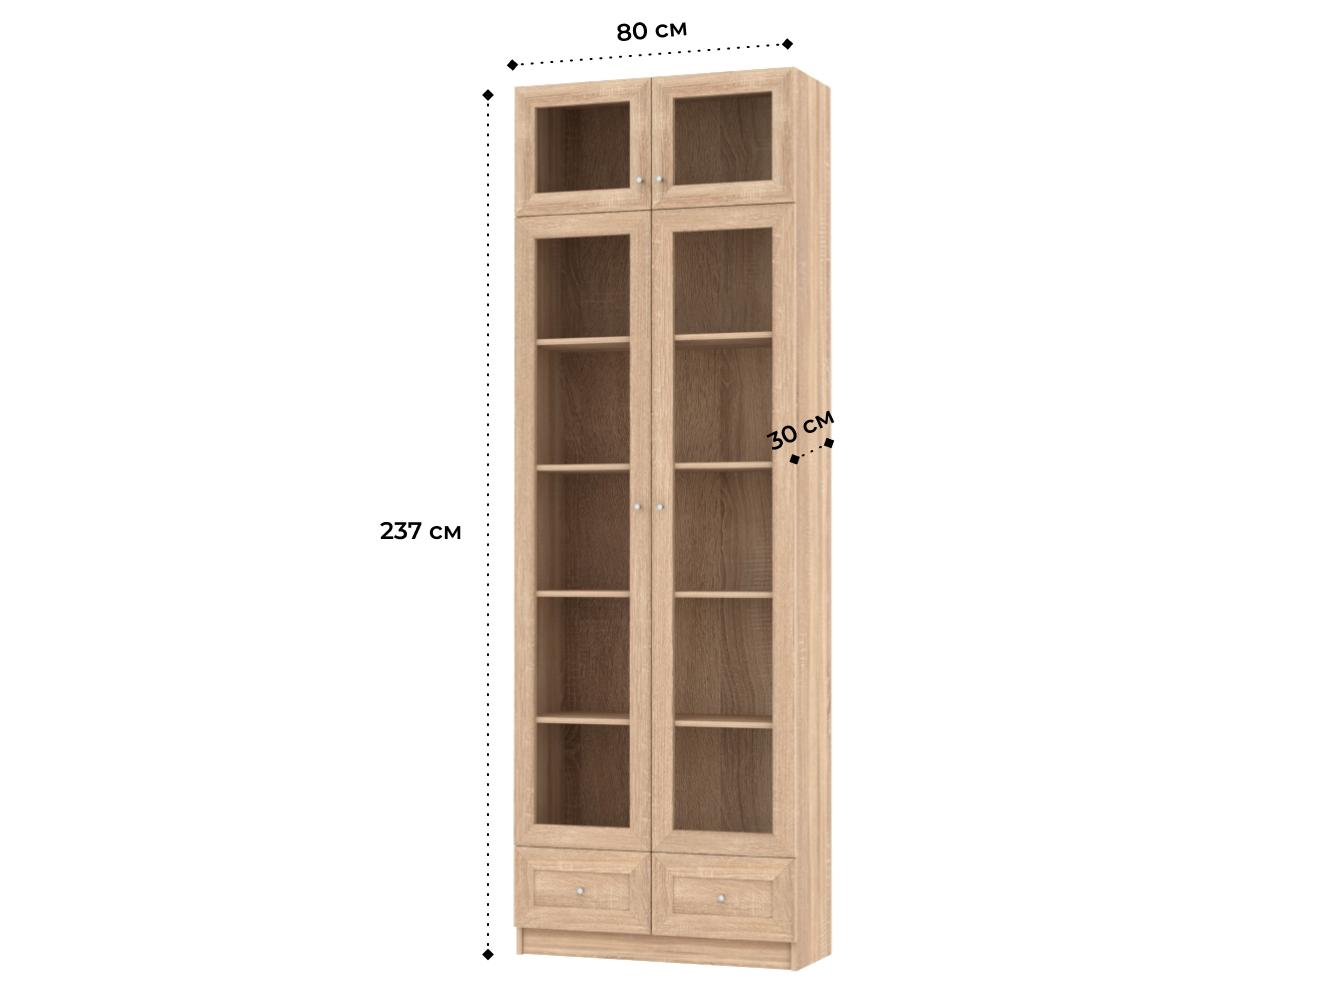  Книжный шкаф Билли 323 beige ИКЕА (IKEA) изображение товара